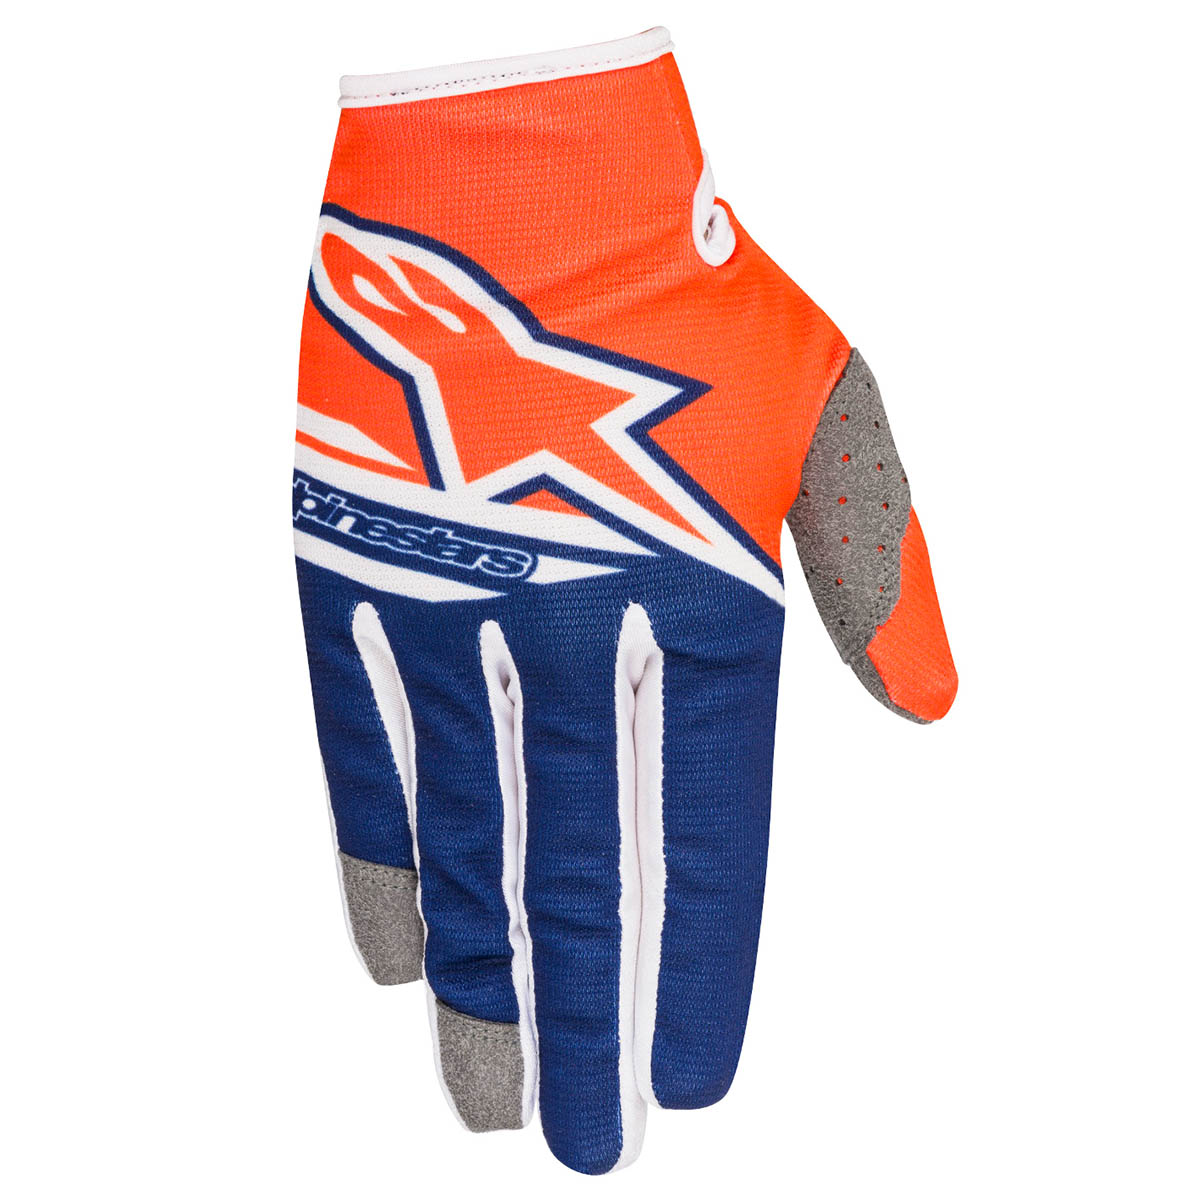 Alpinestars Gloves Radar Flight Orange Fluo/Dark Blue/White